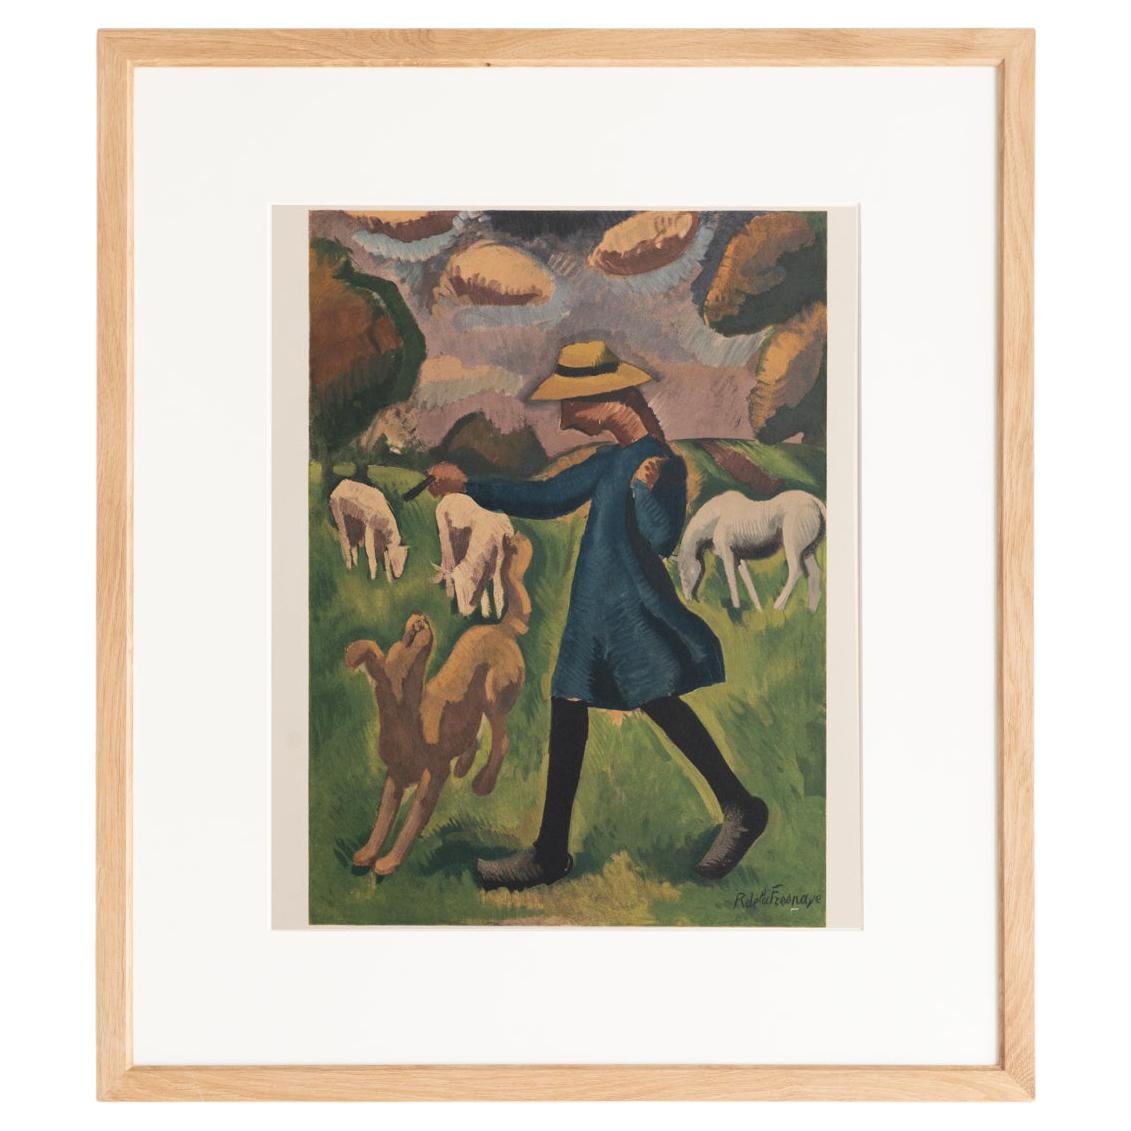 Roger de la Fresnaye 'La Gardeuse de Moutons' Lithographie encadrée, circa 1968